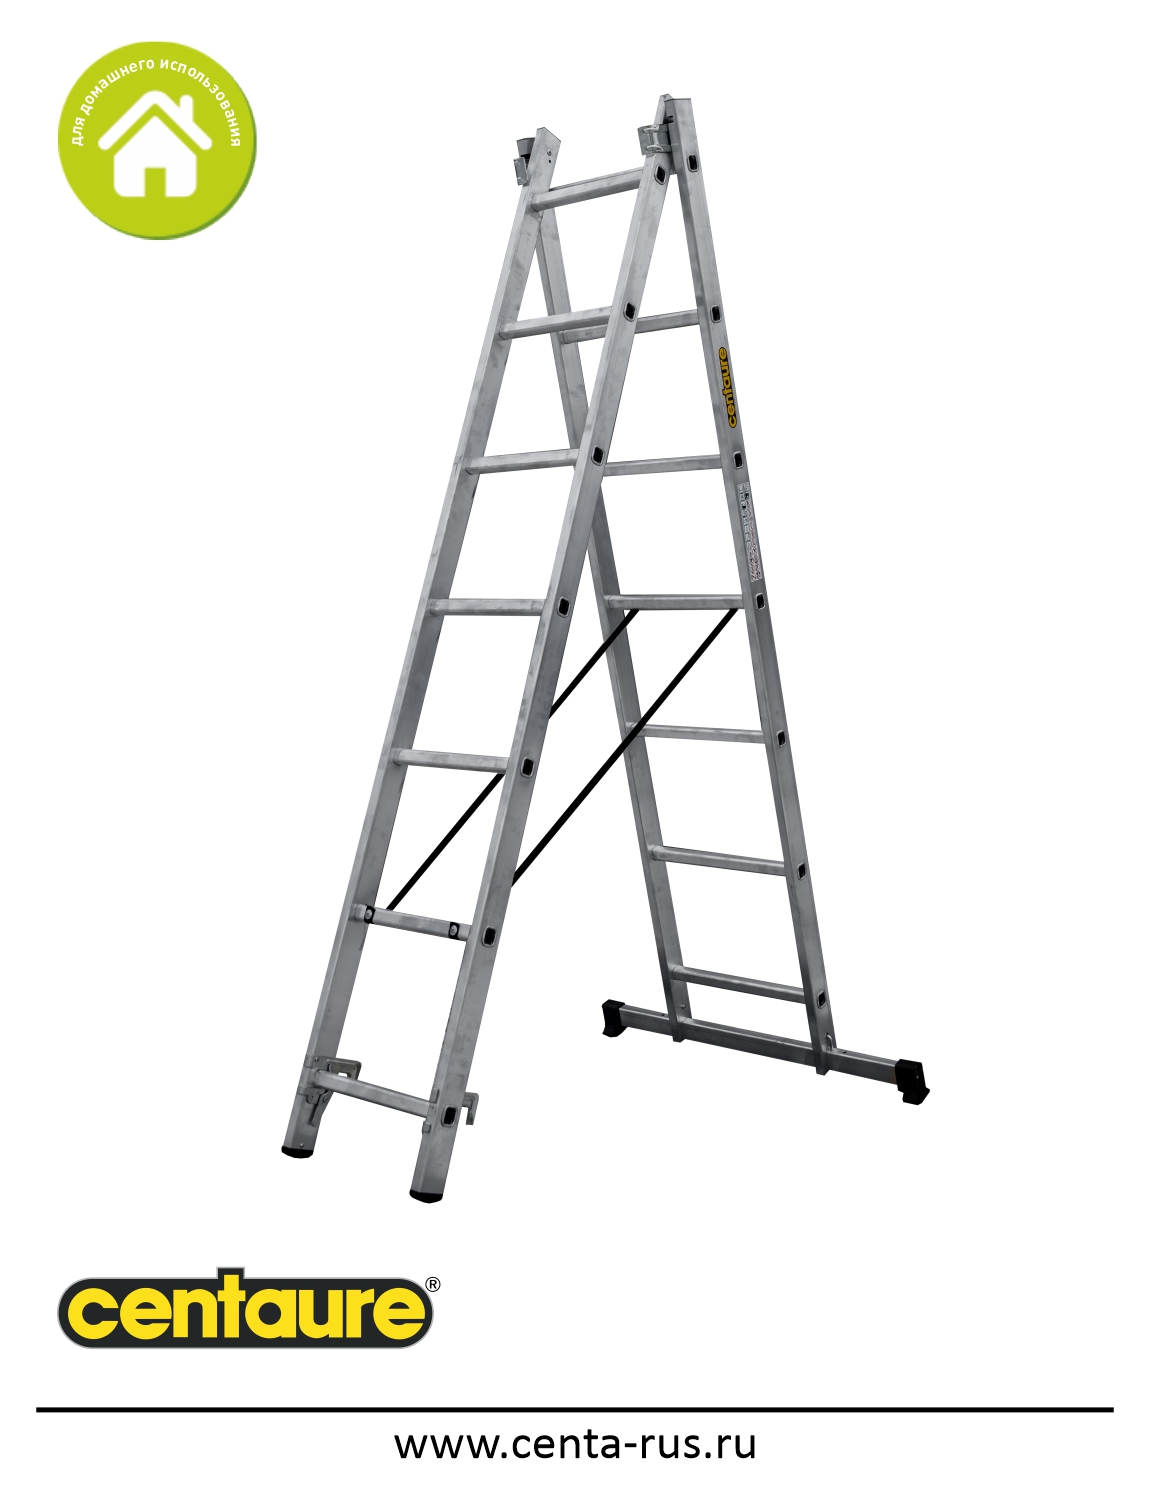 Двухсекционная лестница-стремянка Centaure 2х7 137207